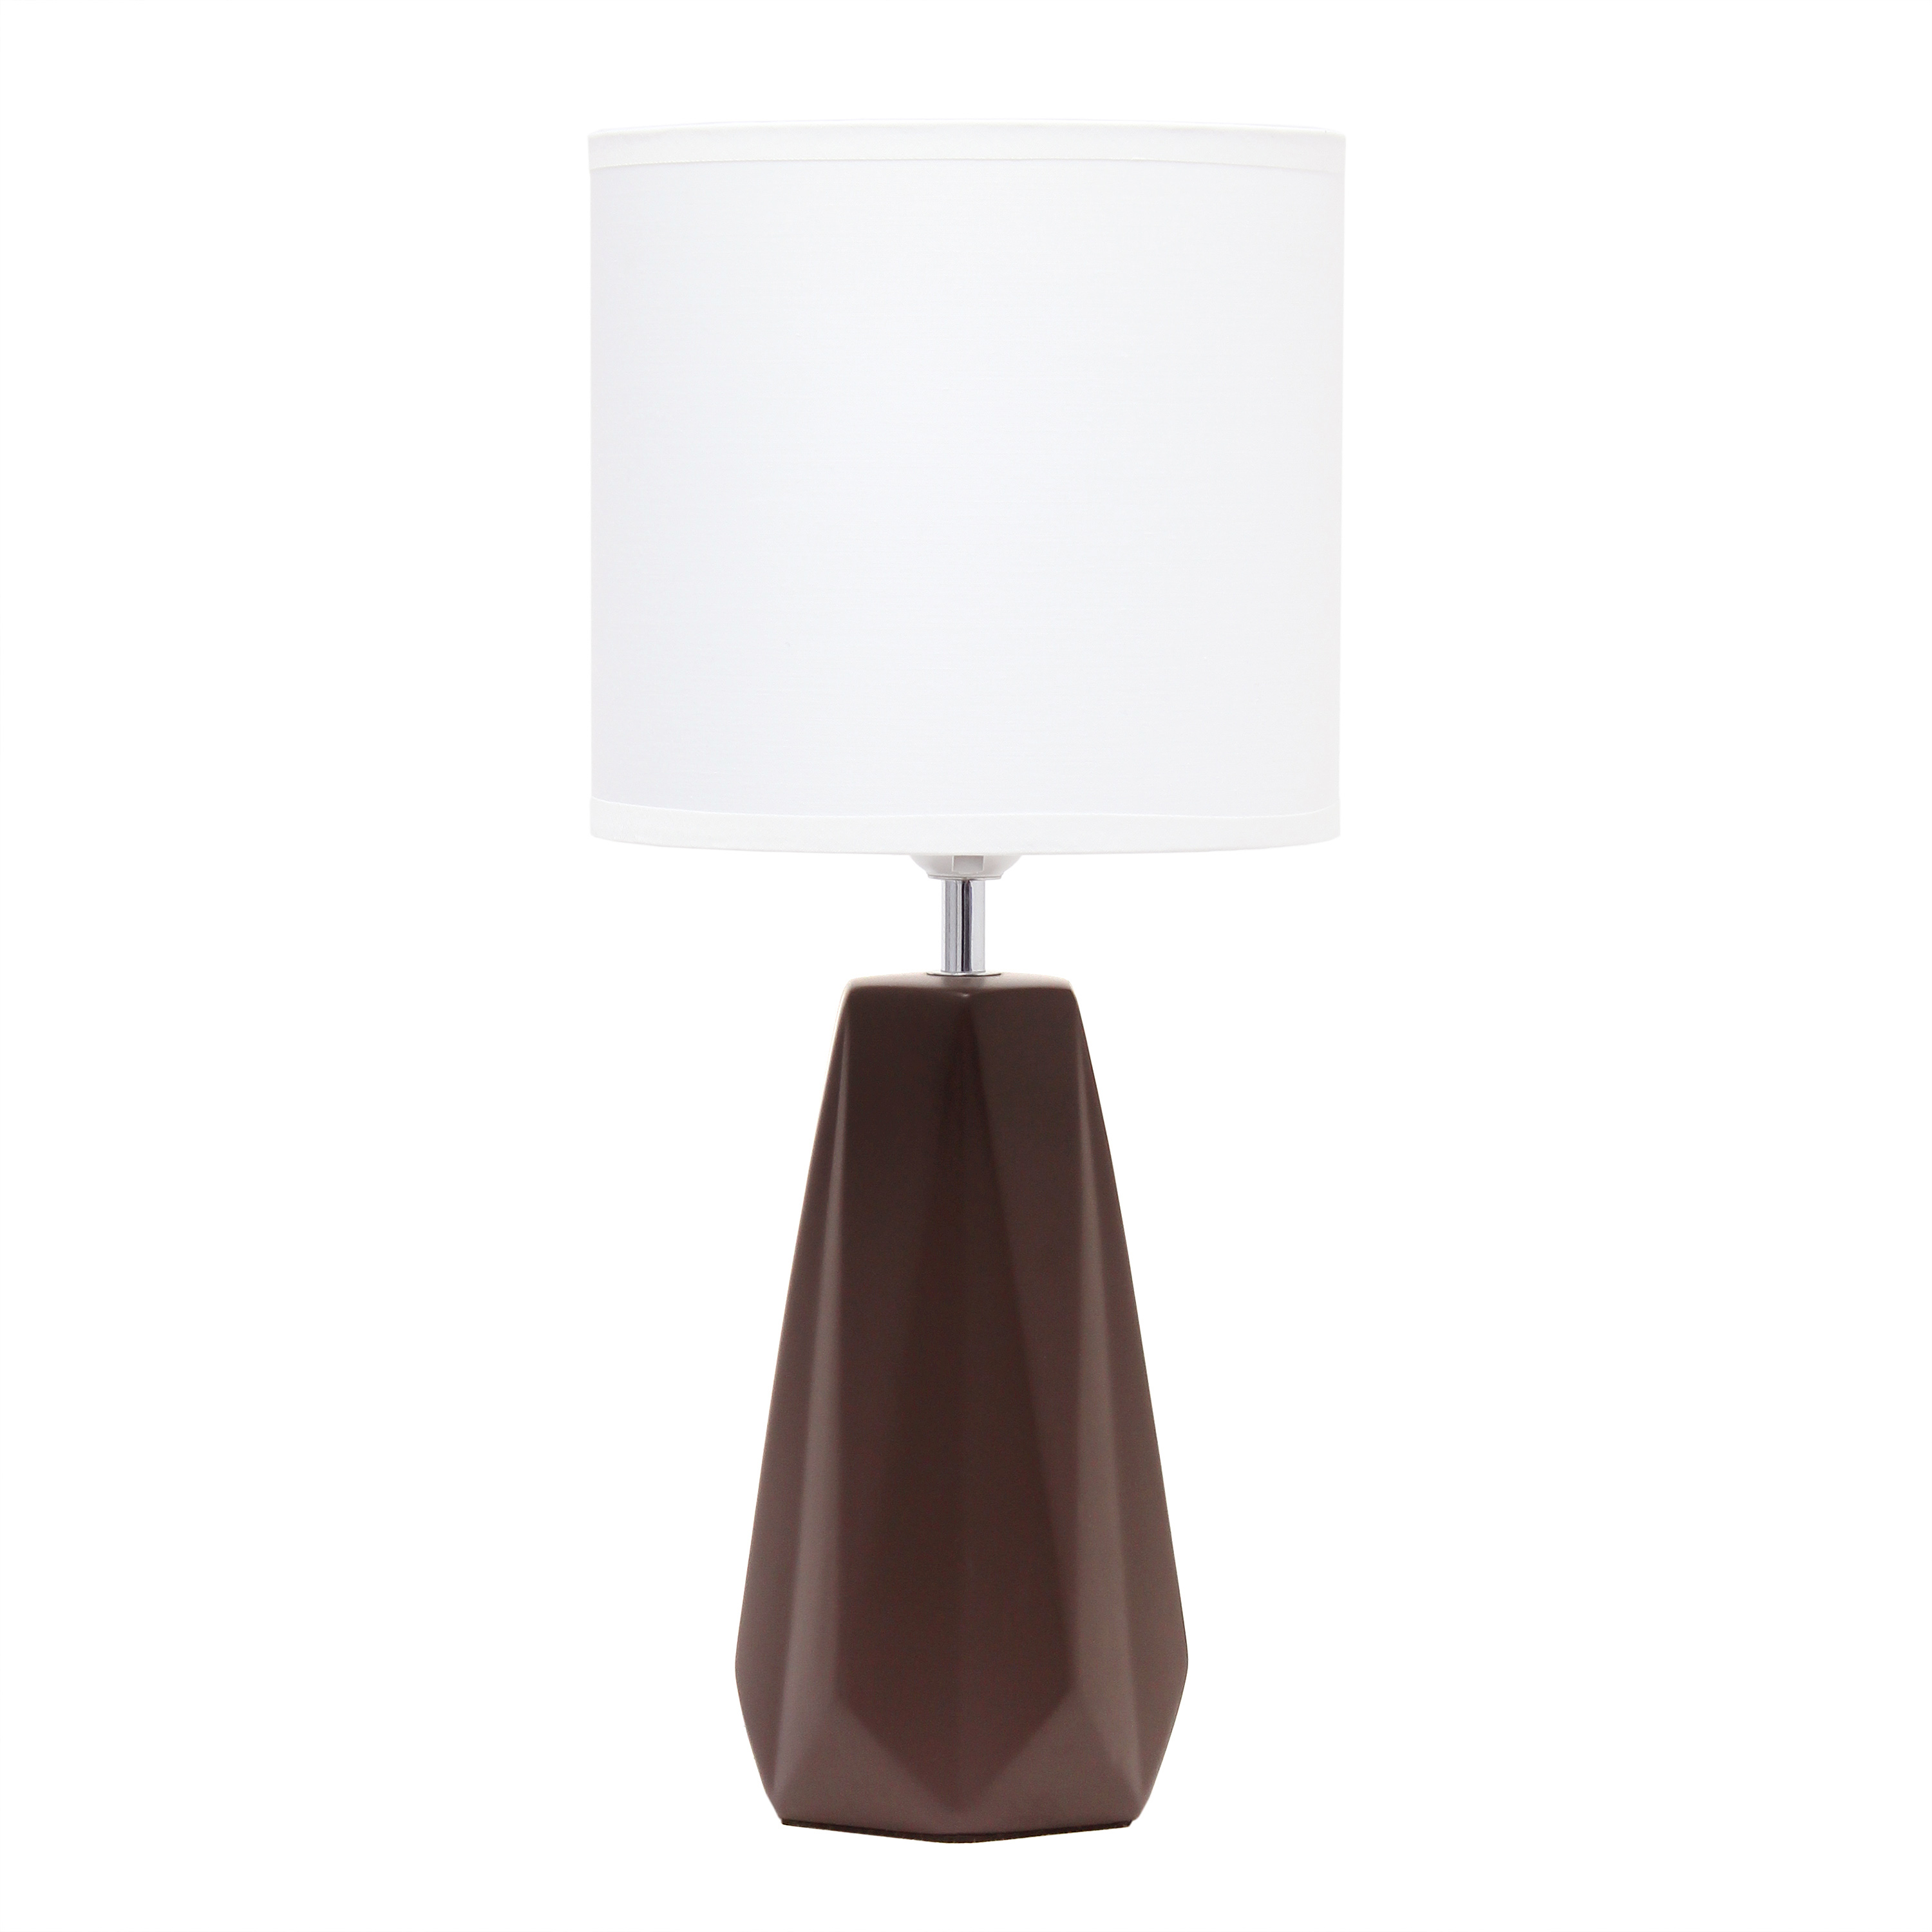 Simple Designs Ceramic Prism Table Lamp, Espresso Brown